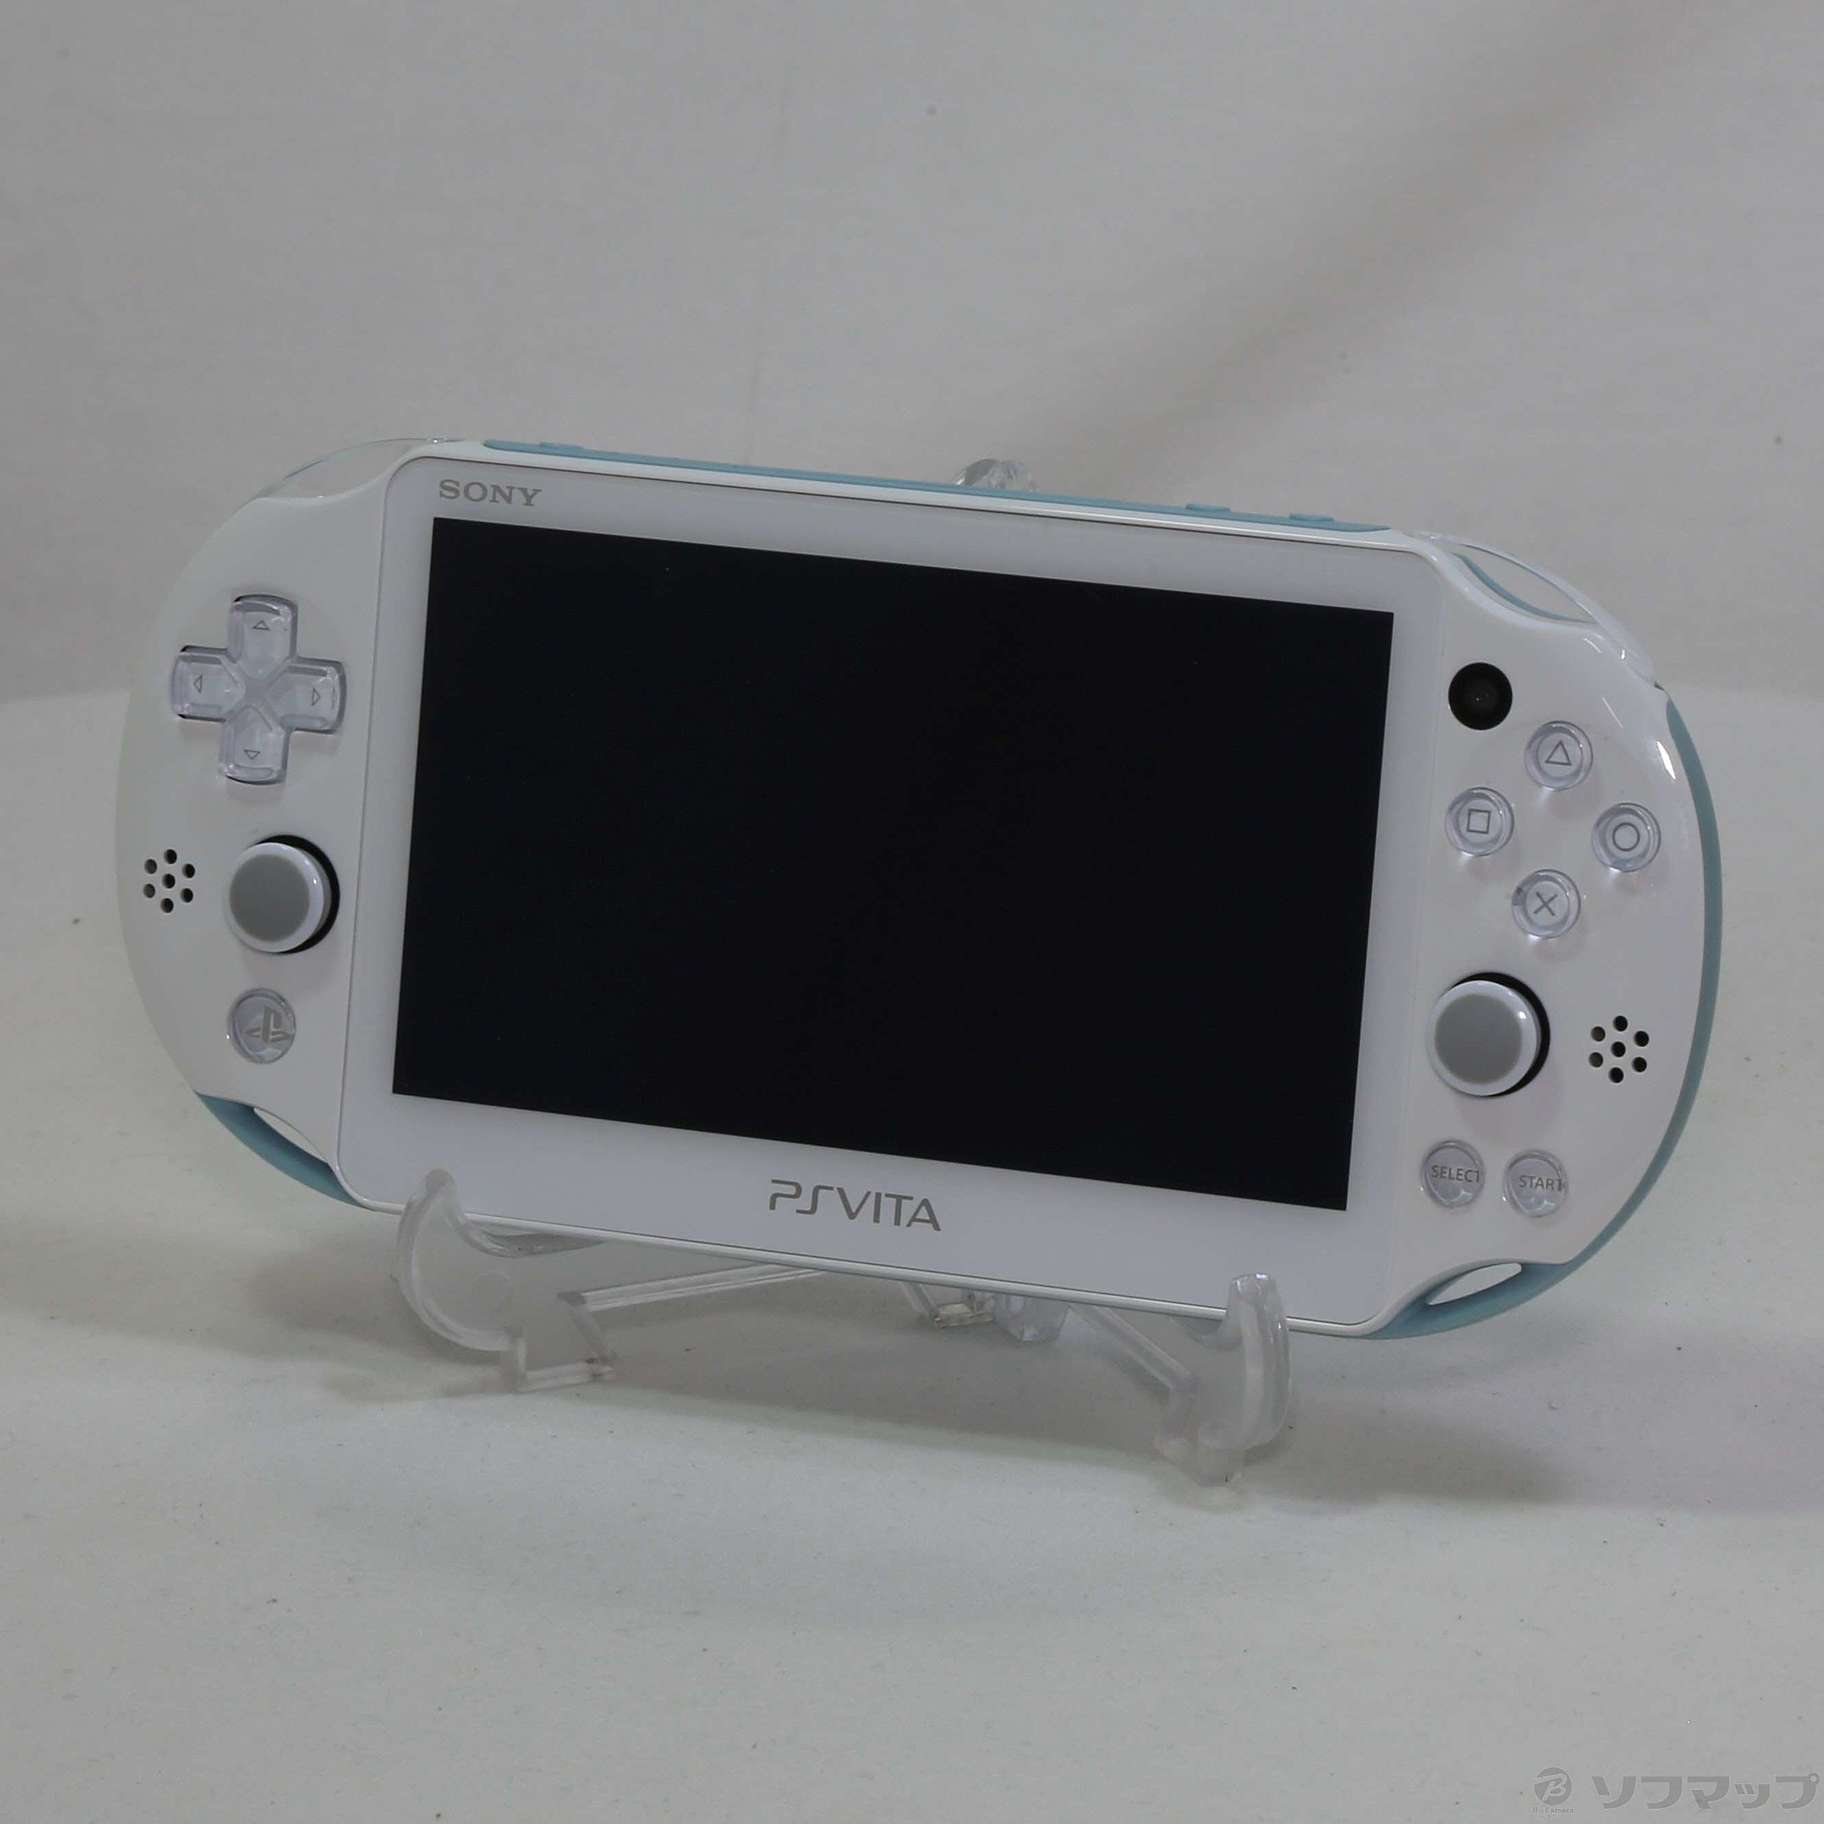 中古】PlayStation Vita Wi-Fiモデル ライトブルー／ホワイト PCH